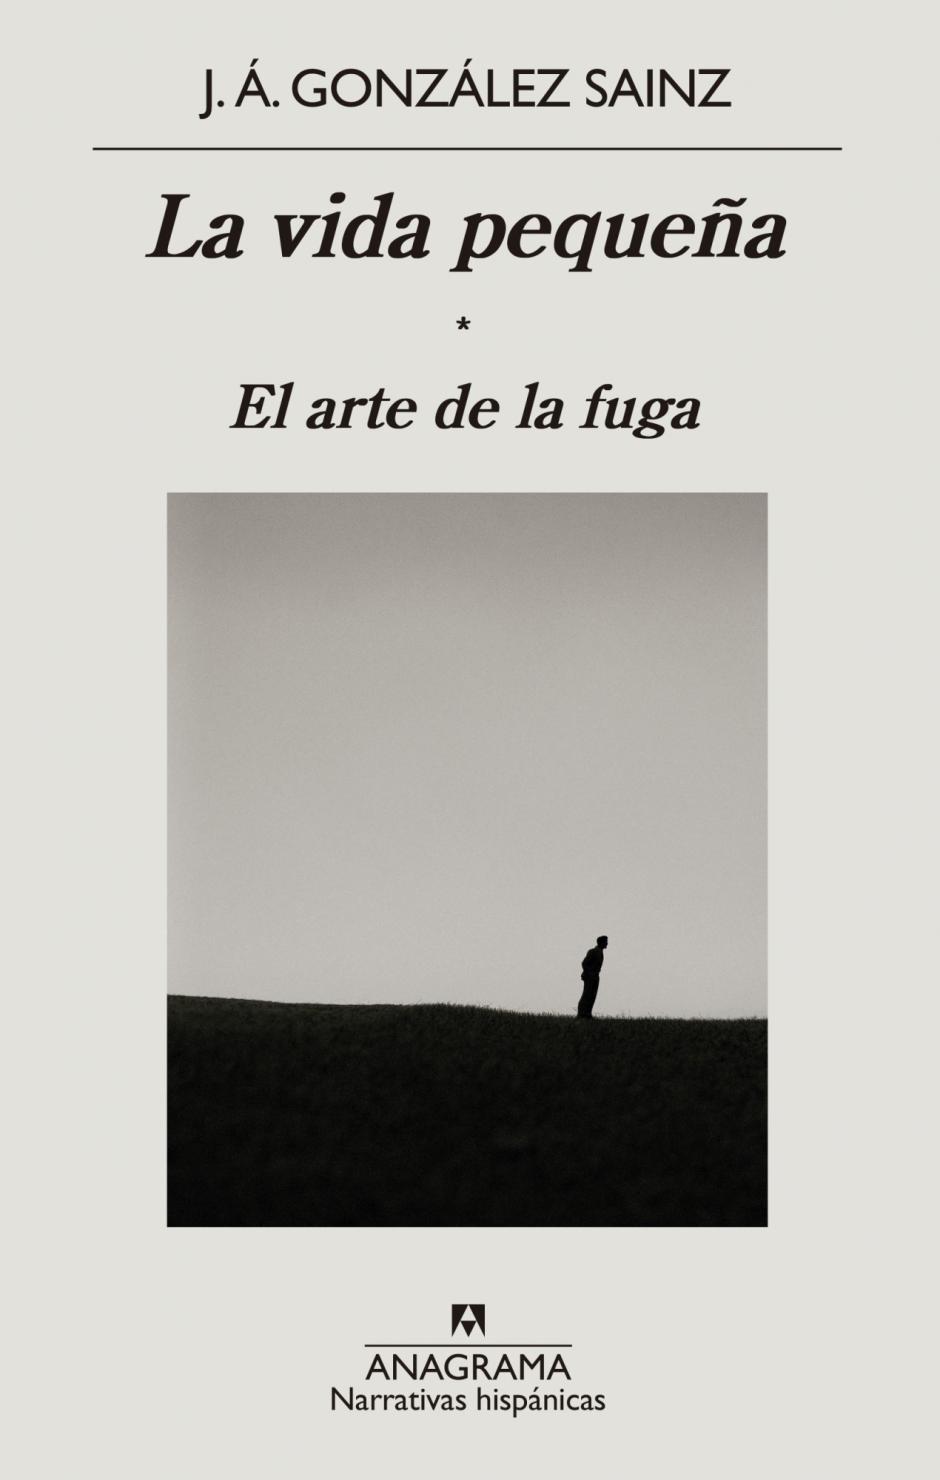 Portada de la última obra de J.A. González Sainz, que ya va por su cuarta edición